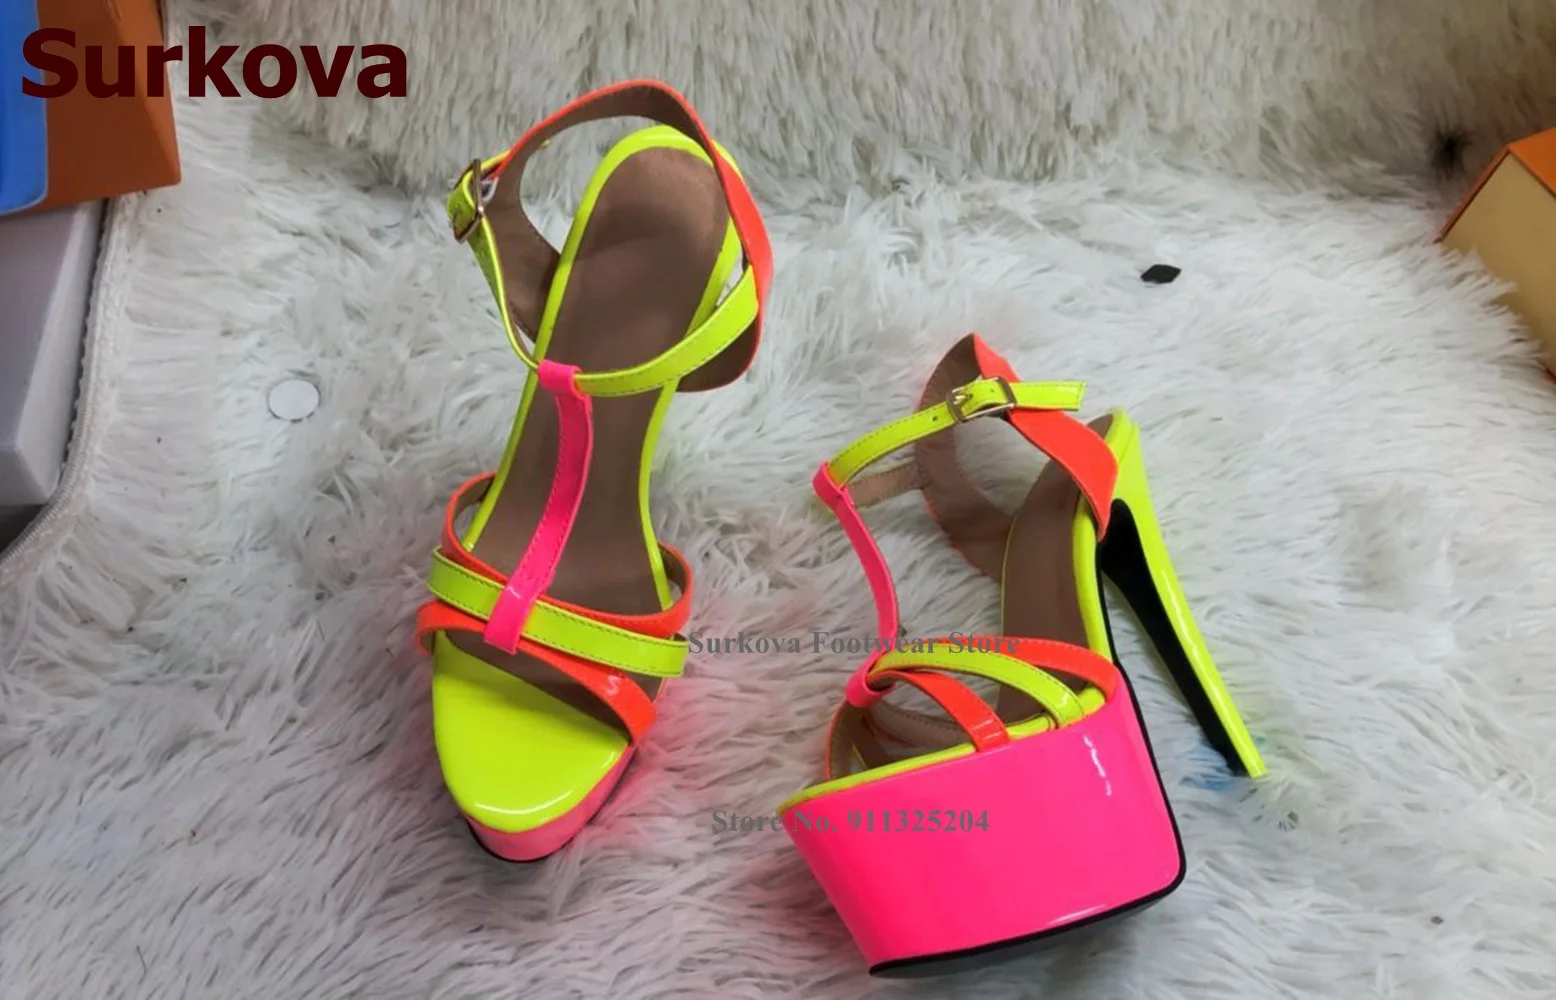 Surkova Neon Yellow Stiletto Heels Platform Sandals Colorized T-Strap Bride Shoes Women Amazing Mirror Leather Patchwork Pumps images - 6